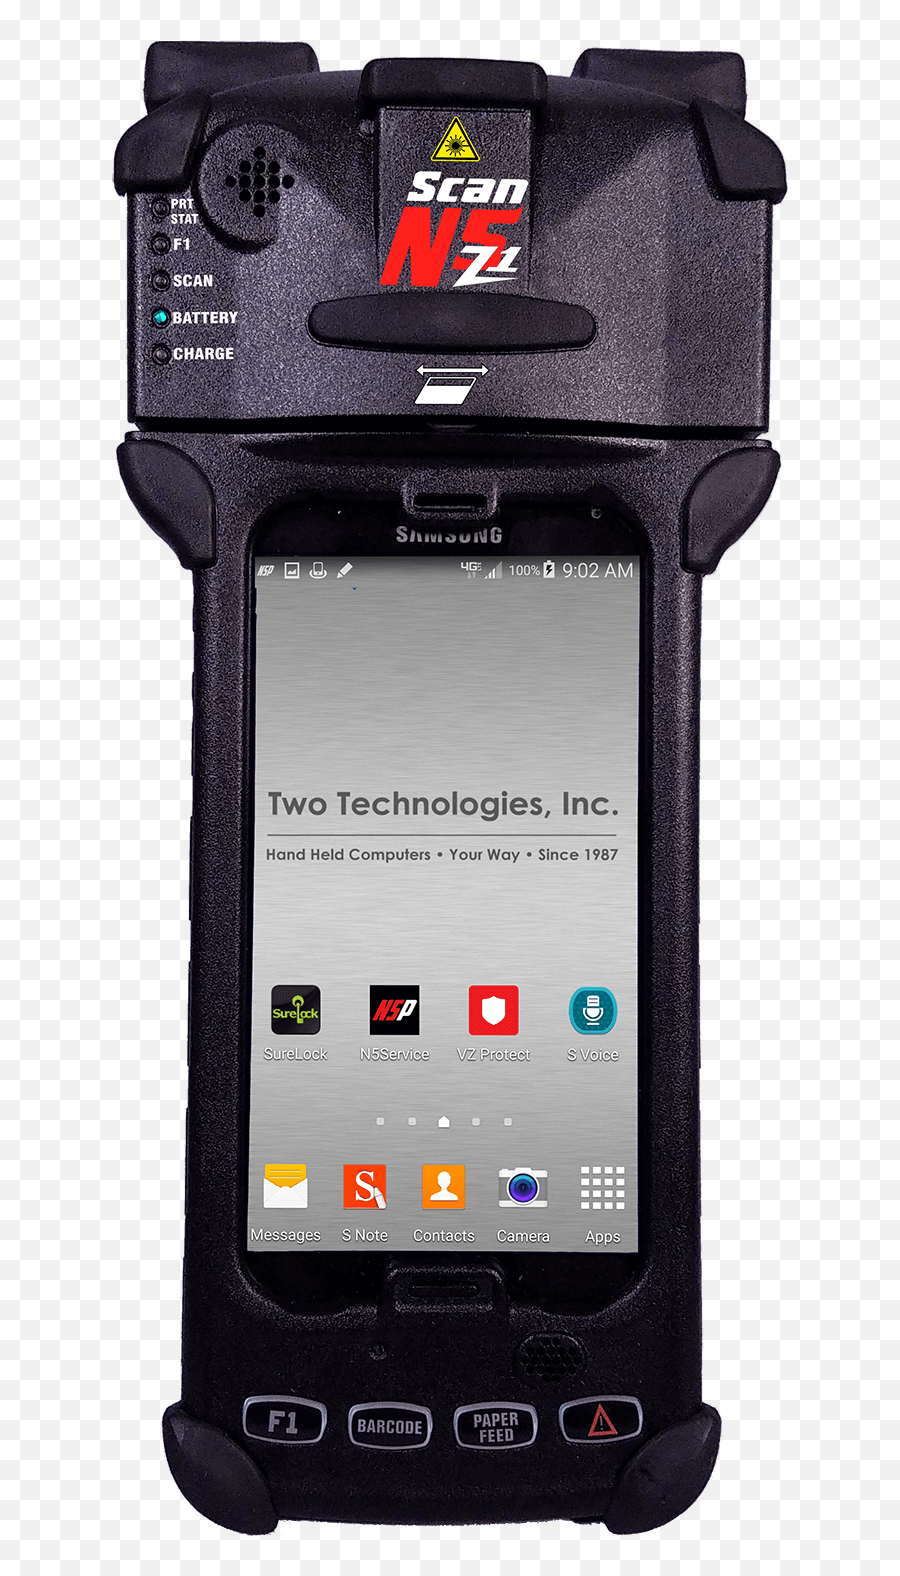 Download N5 Series N5z1 Scan Hand Held Multipurpose Scanner - Smartphone Png,Scanner Png